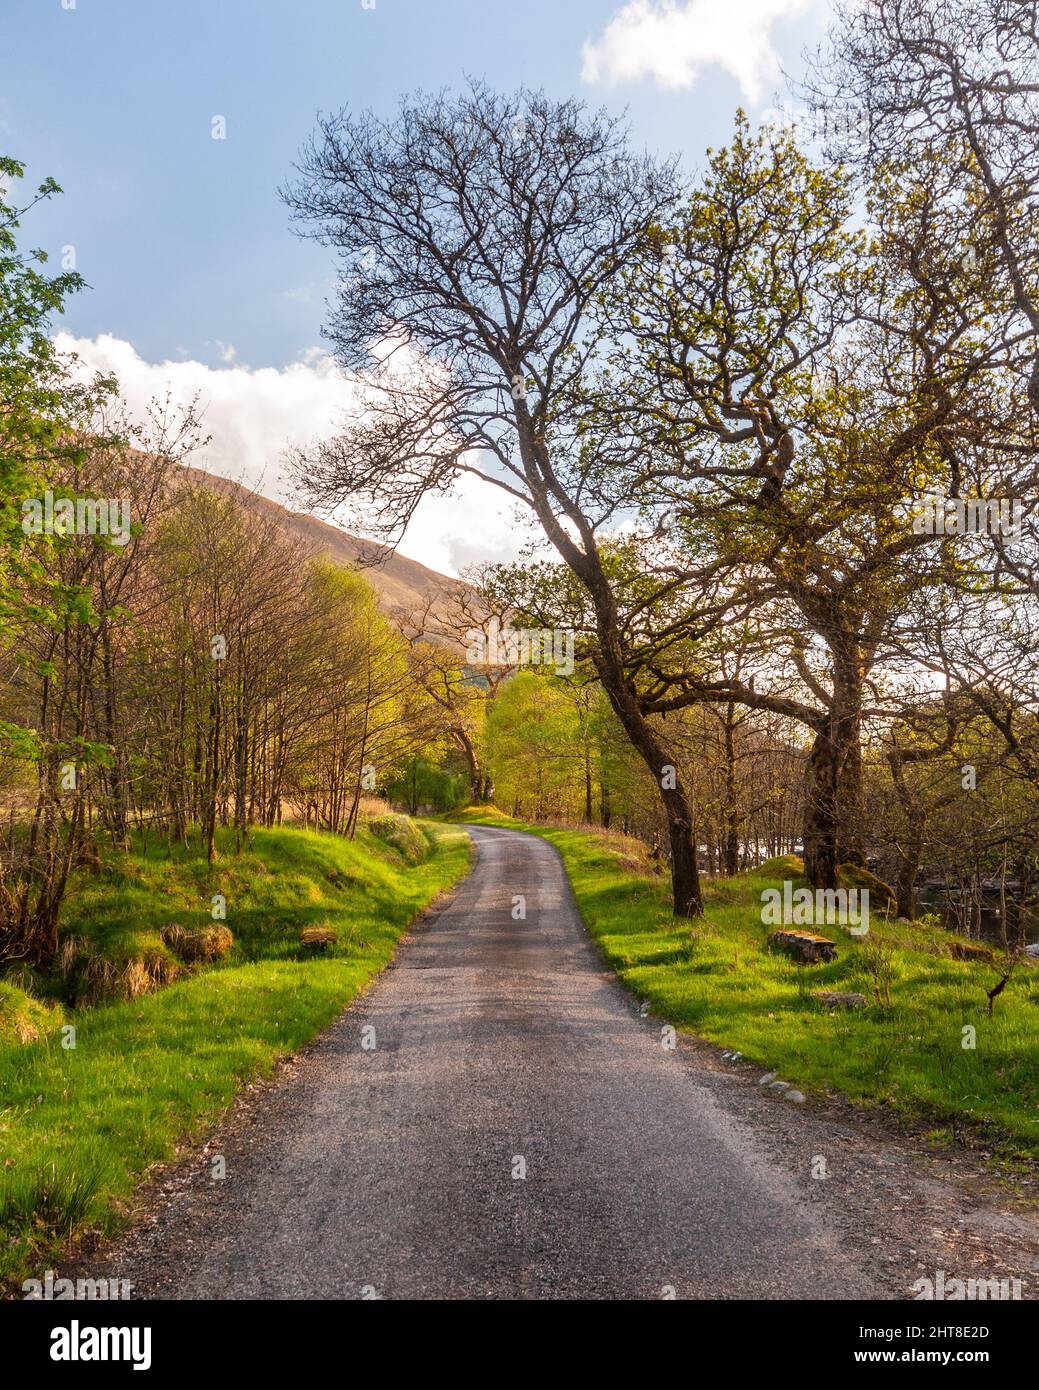 Una strada a binario singolo corre tra gli alberi nella valle di Glen Orchy, nelle West Highlands della Scozia. Foto Stock